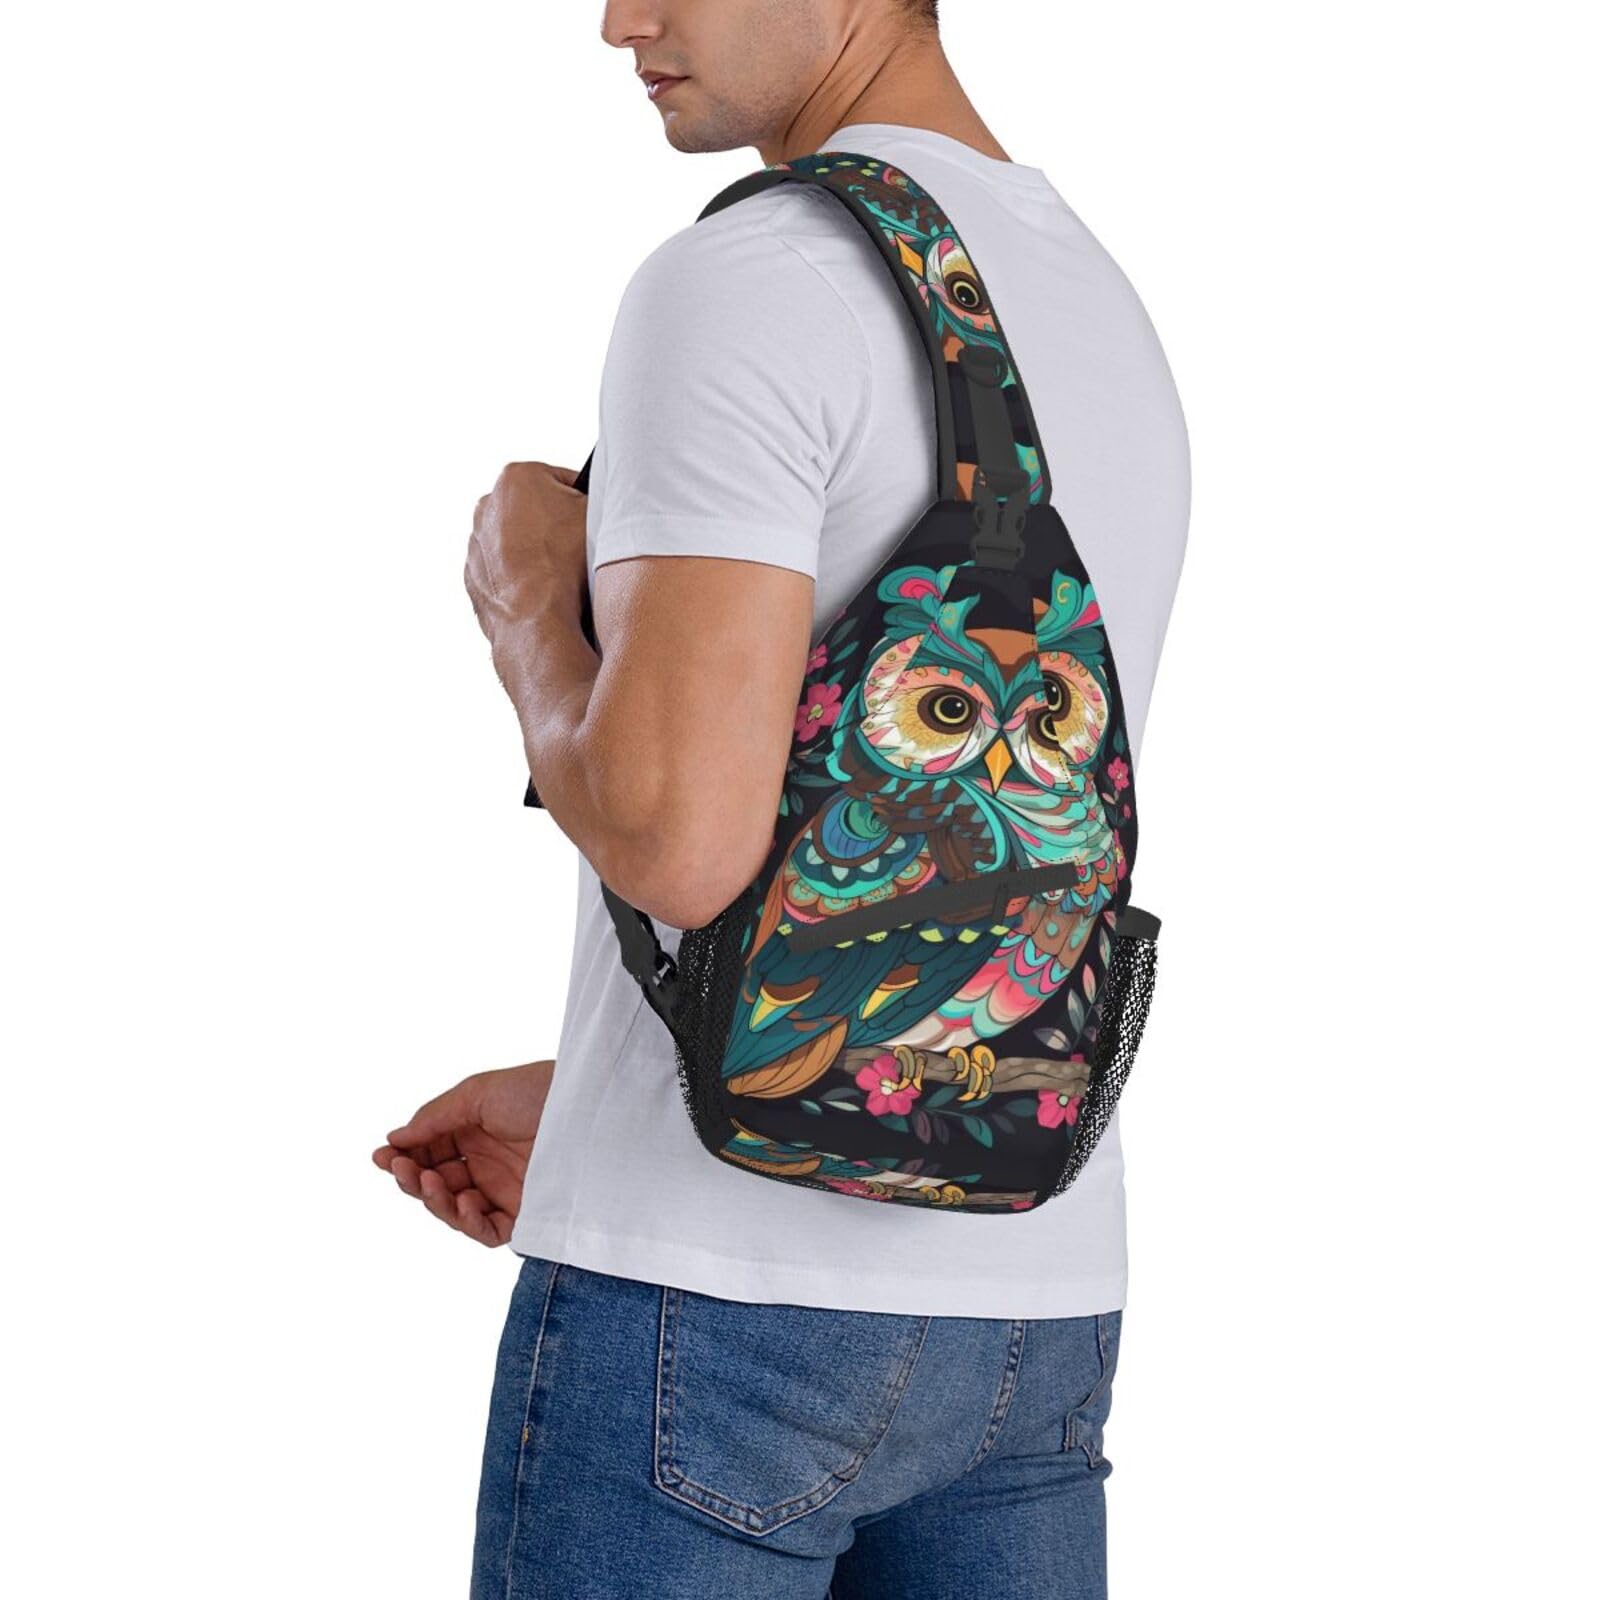 VTCTOASY Anime Owl Print Sling Bag Shoulder Sling Backpack Travel Hiking Chest Bag For Men Women